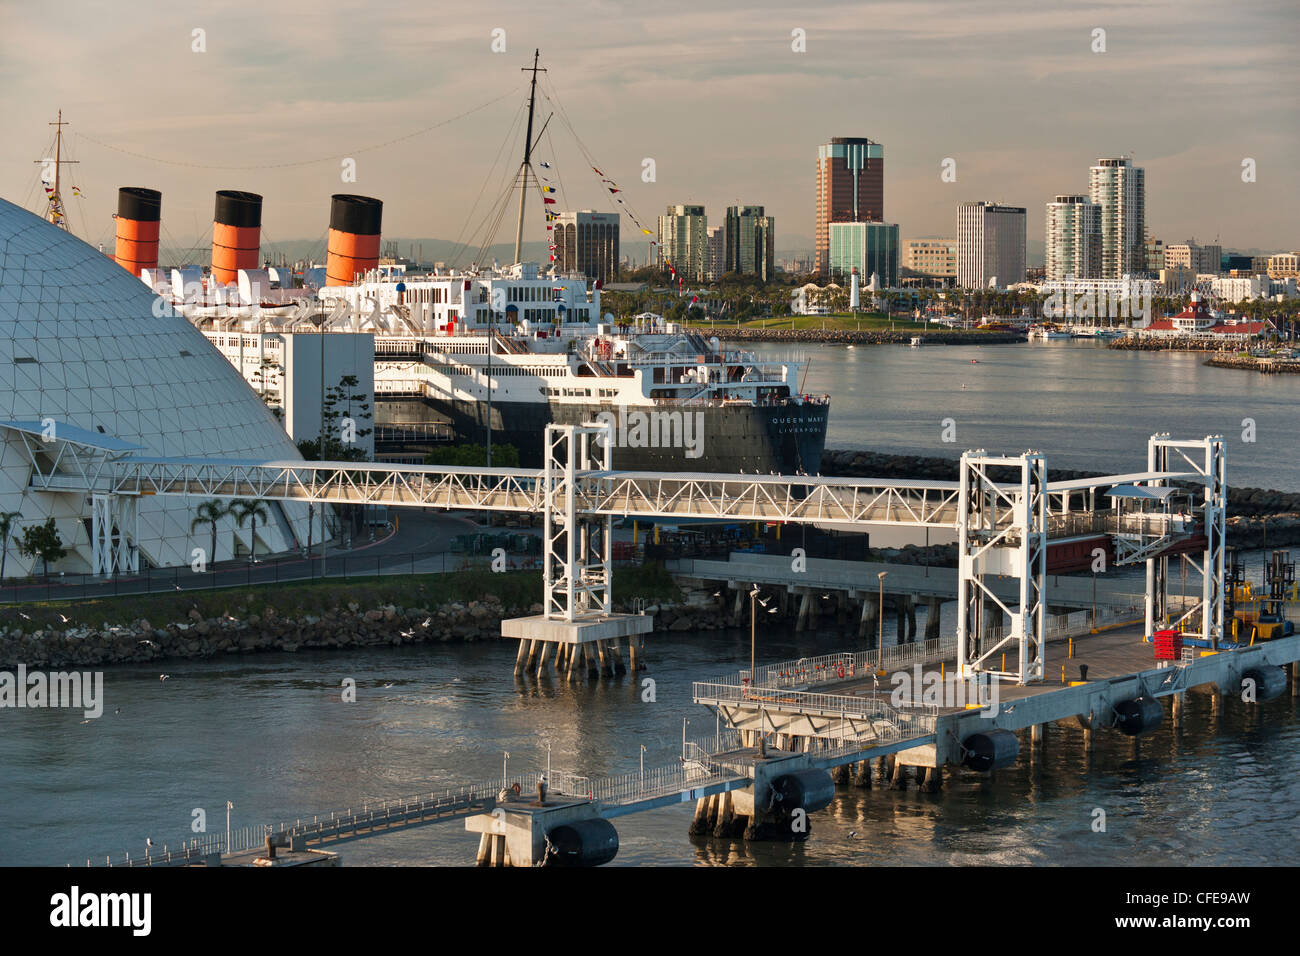 Queen Mary ocean liner ormeggiata al Porto di Long Beach come si vede dalla partenza nave da crociera-Long Beach, California, Stati Uniti d'America. Foto Stock